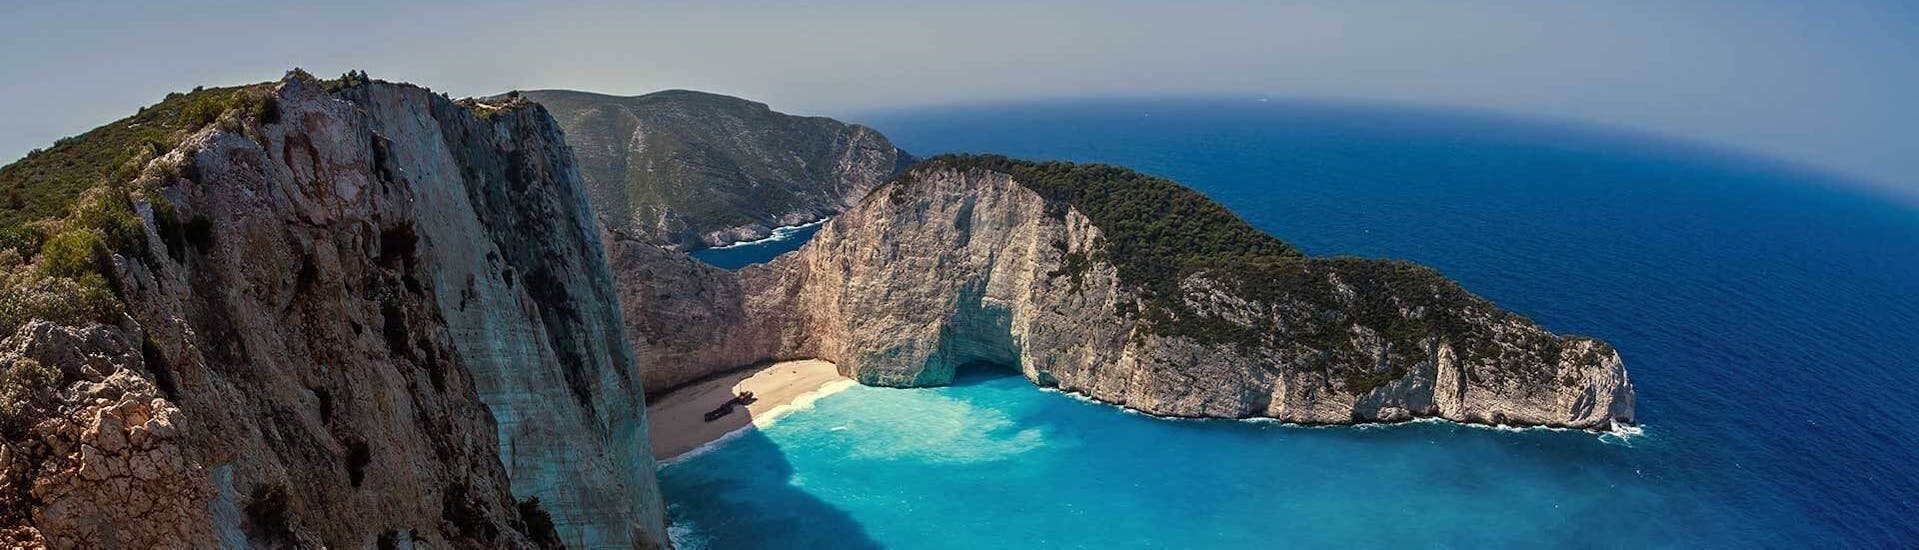 La baia di Zante durante la Gita in gommone alle Grotte Blu, al Navagio e a Xigia con soste per nuotare con Explore Zakynthos.